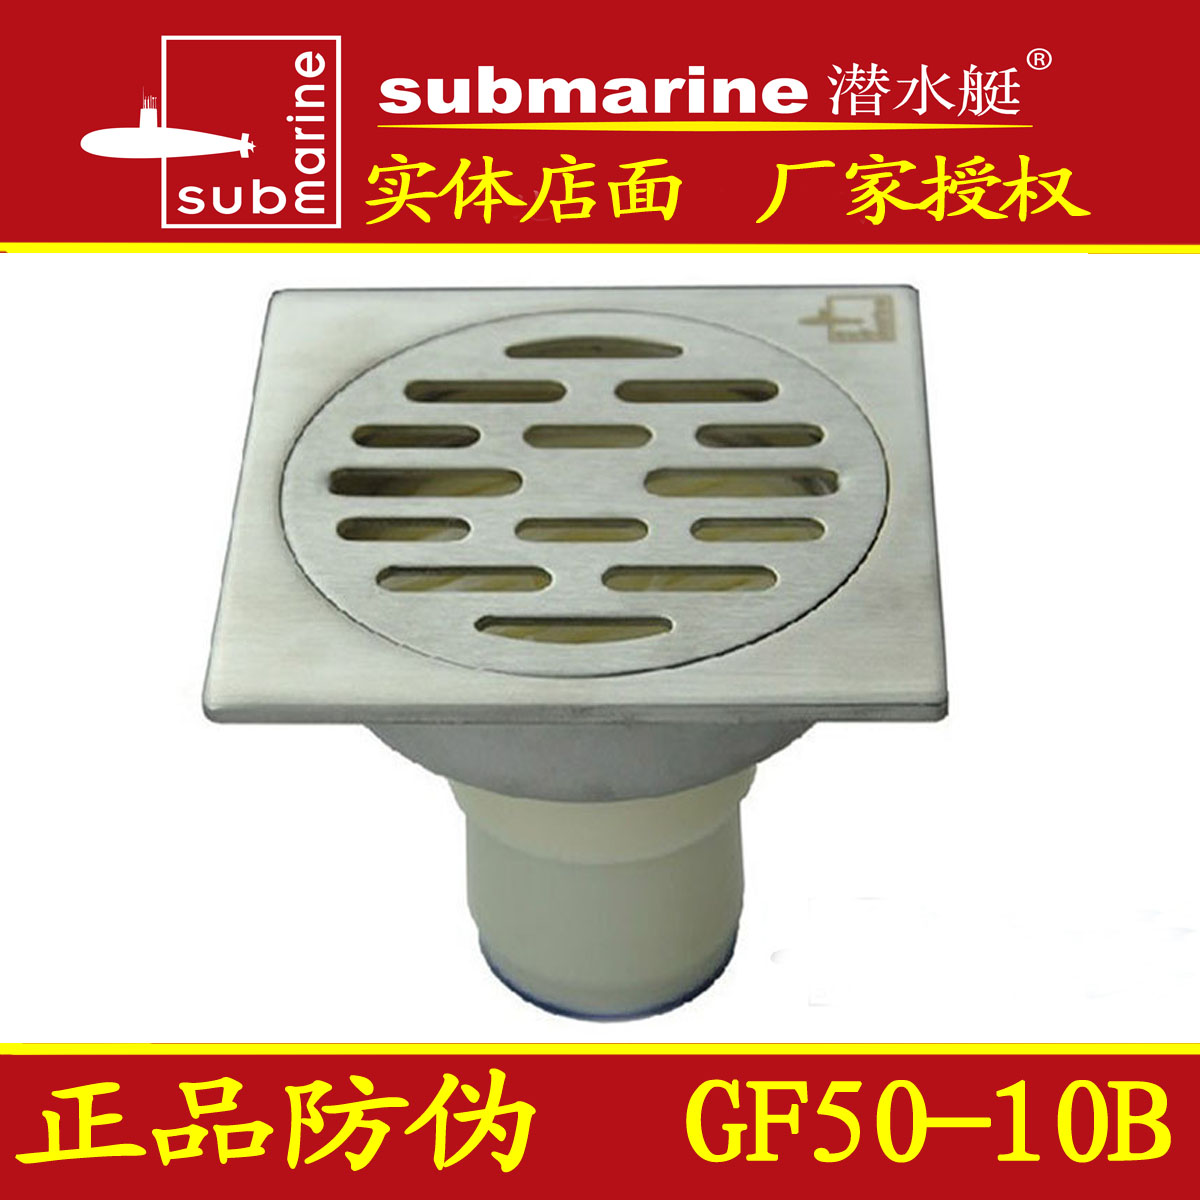 【授权正品】潜水艇地漏gf50-10b 潜水艇专卖 加厚不锈钢防臭地漏